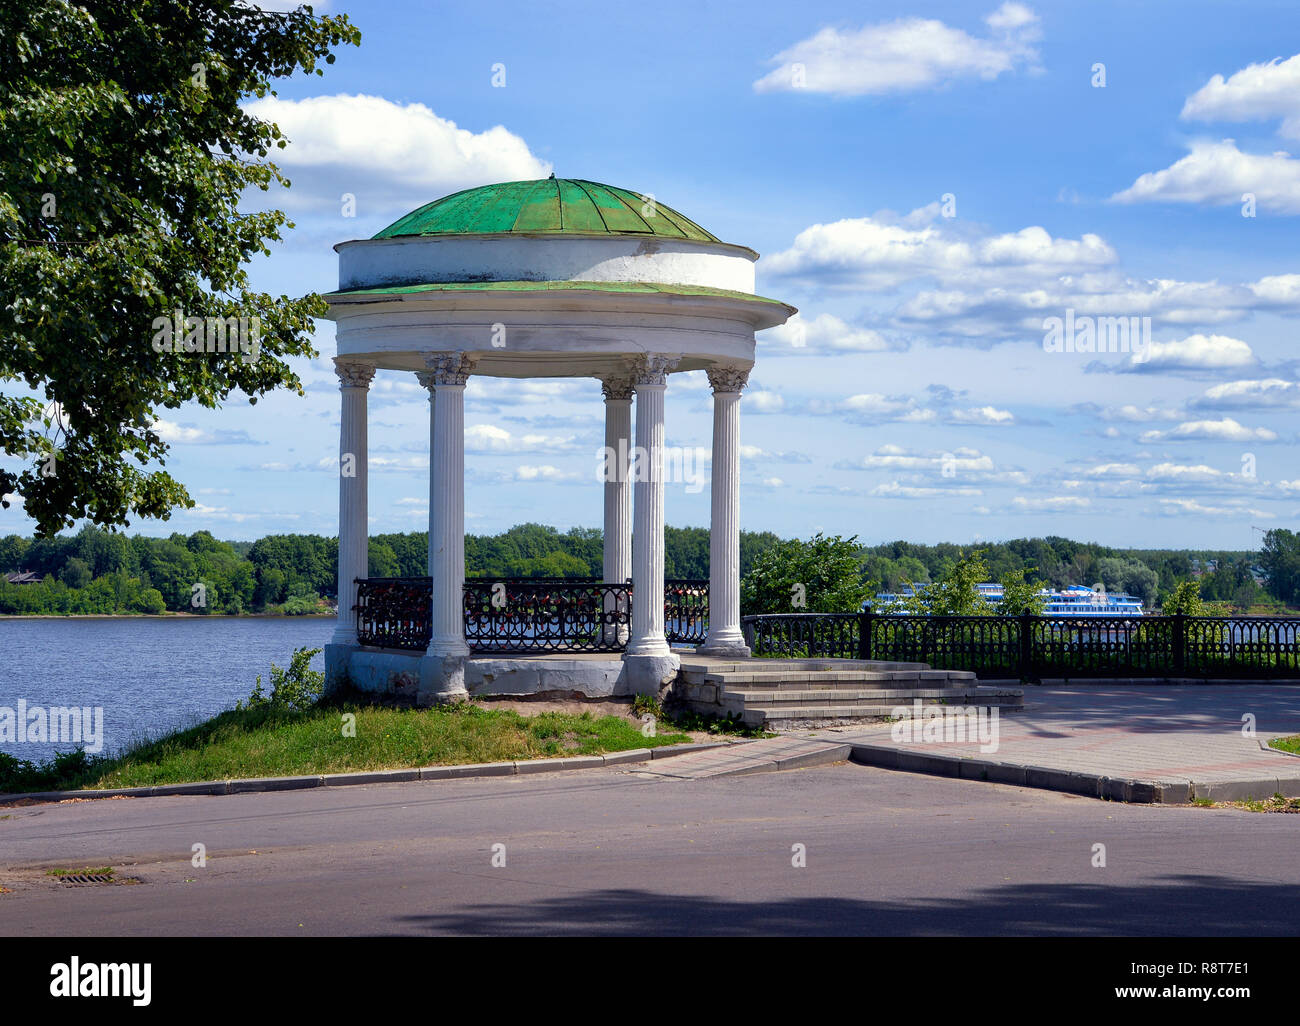 Ancienne rotonde sur la Volga, Banque mondiale. Yaroslavl. La Russie. Banque D'Images